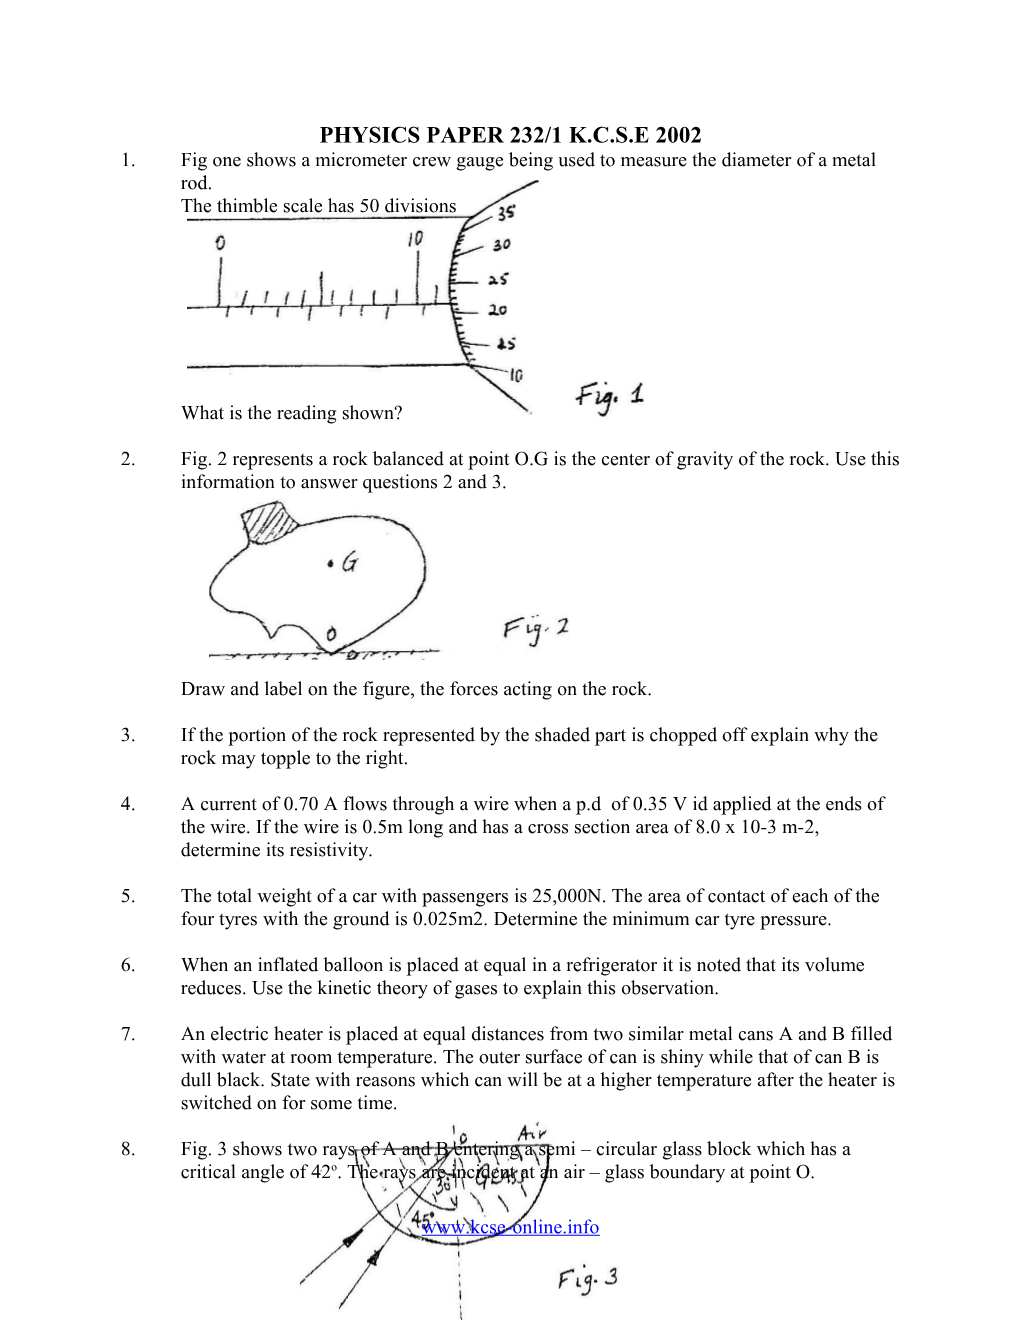 Physics Paper 232/1 K.C.S.E 2002